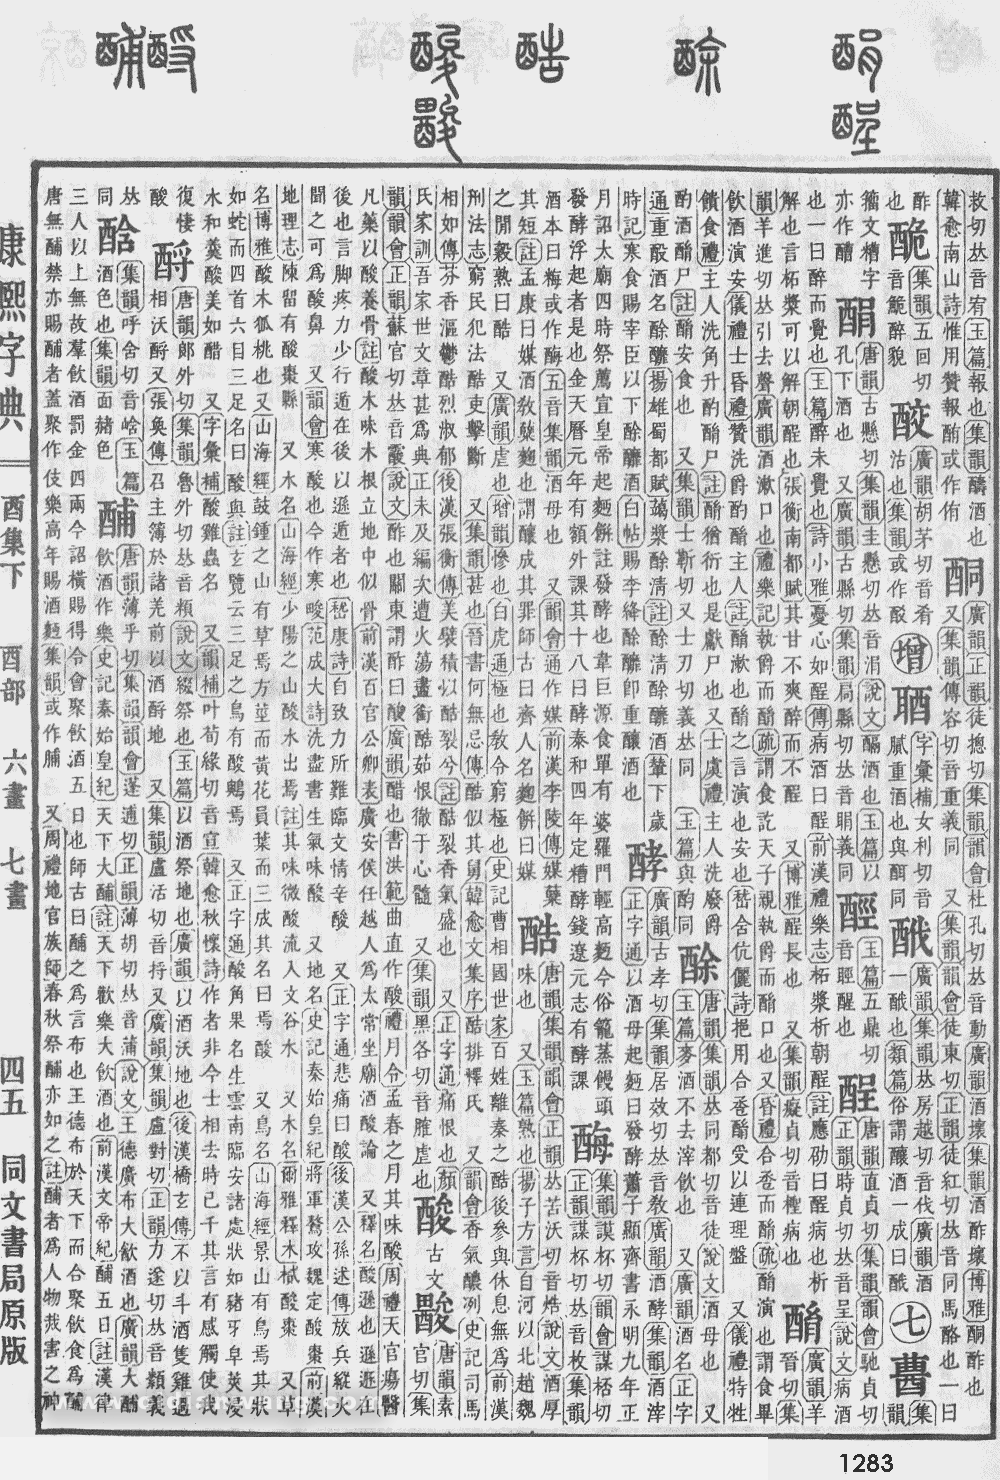 康熙字典掃描版第1283頁